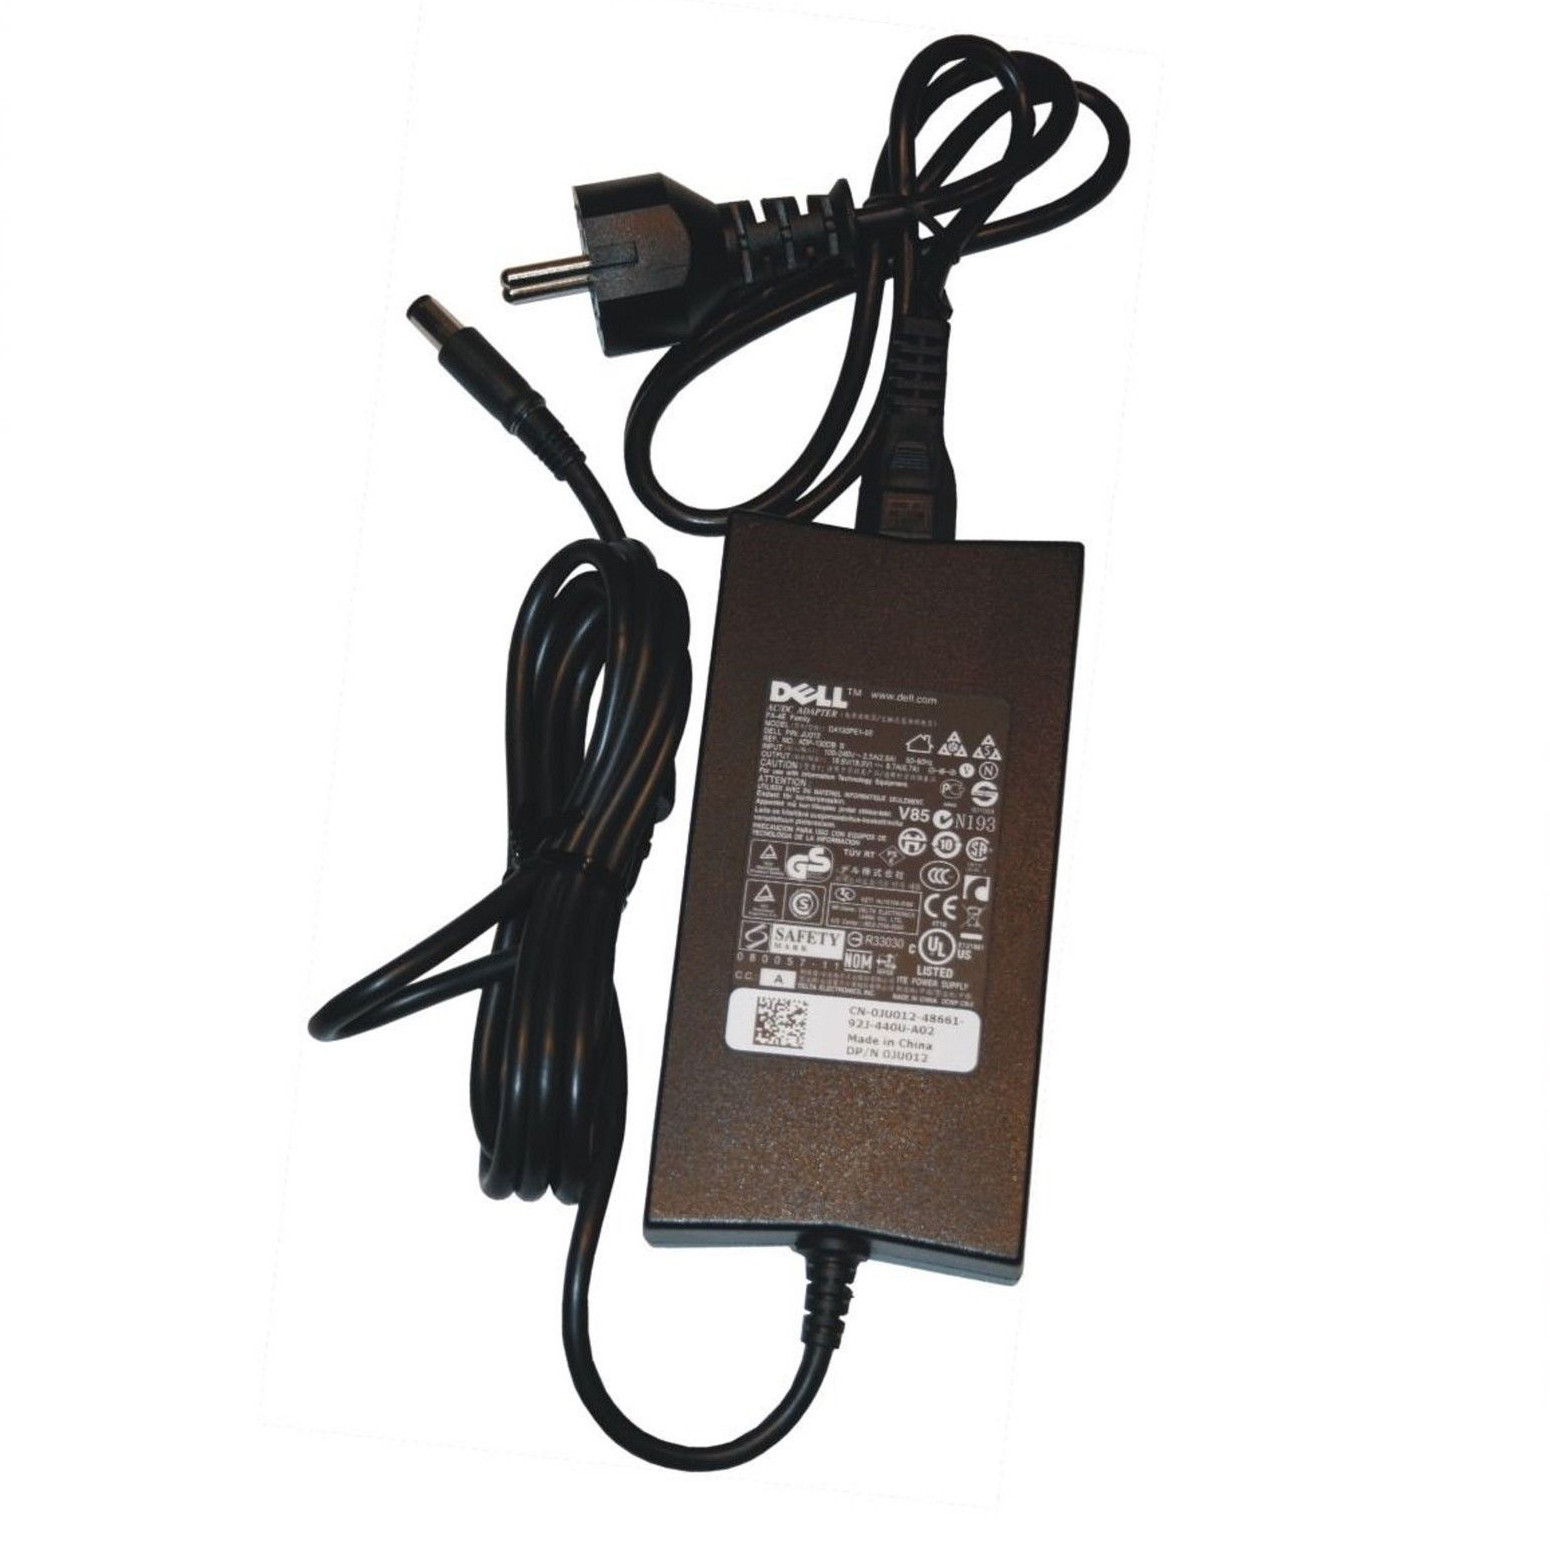 Chargeur Pc portable reconditionné Dell 130W - Multi-modèle